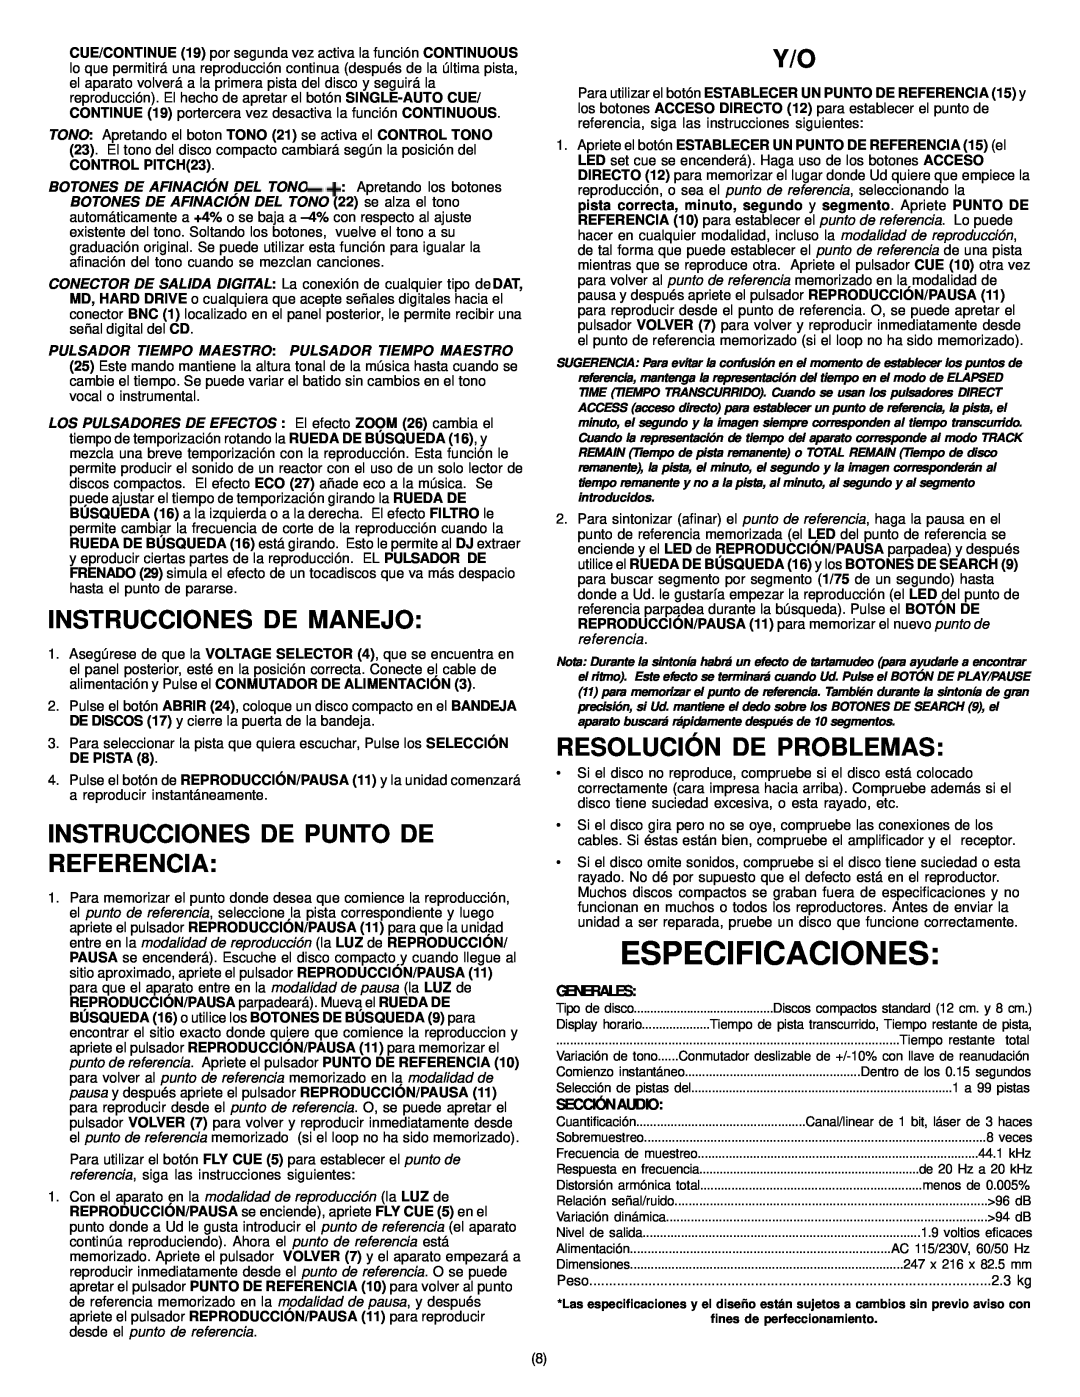 Gemini CD-400X Especificaciones, Instrucciones De Manejo, Instrucciones De Punto De Referencia, Resolución De Problemas 